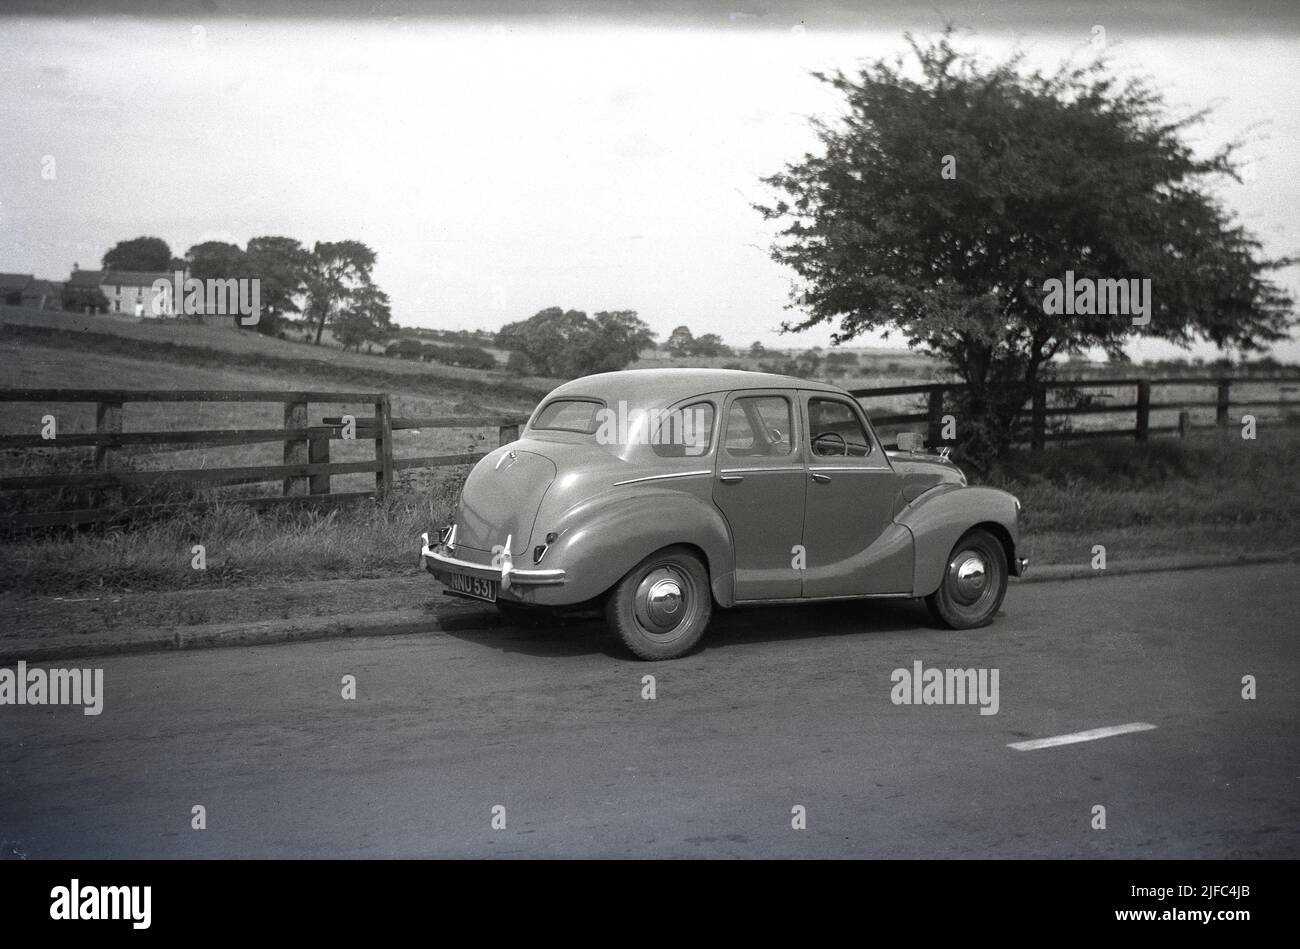 1950s, vue arrière historique d'une voiture Austin de l'époque, une berline Devon A40 garée sur une route de campagne, en Angleterre. Produite entre 1947 et 1952, la voiture a été la première berline d'après-guerre réalisée par la Austin Motor Company. Avec un mélange de technologies anciennes et plus récentes, la voiture a été remarquable pour son style ancien et l'apparence conservatrice. Banque D'Images